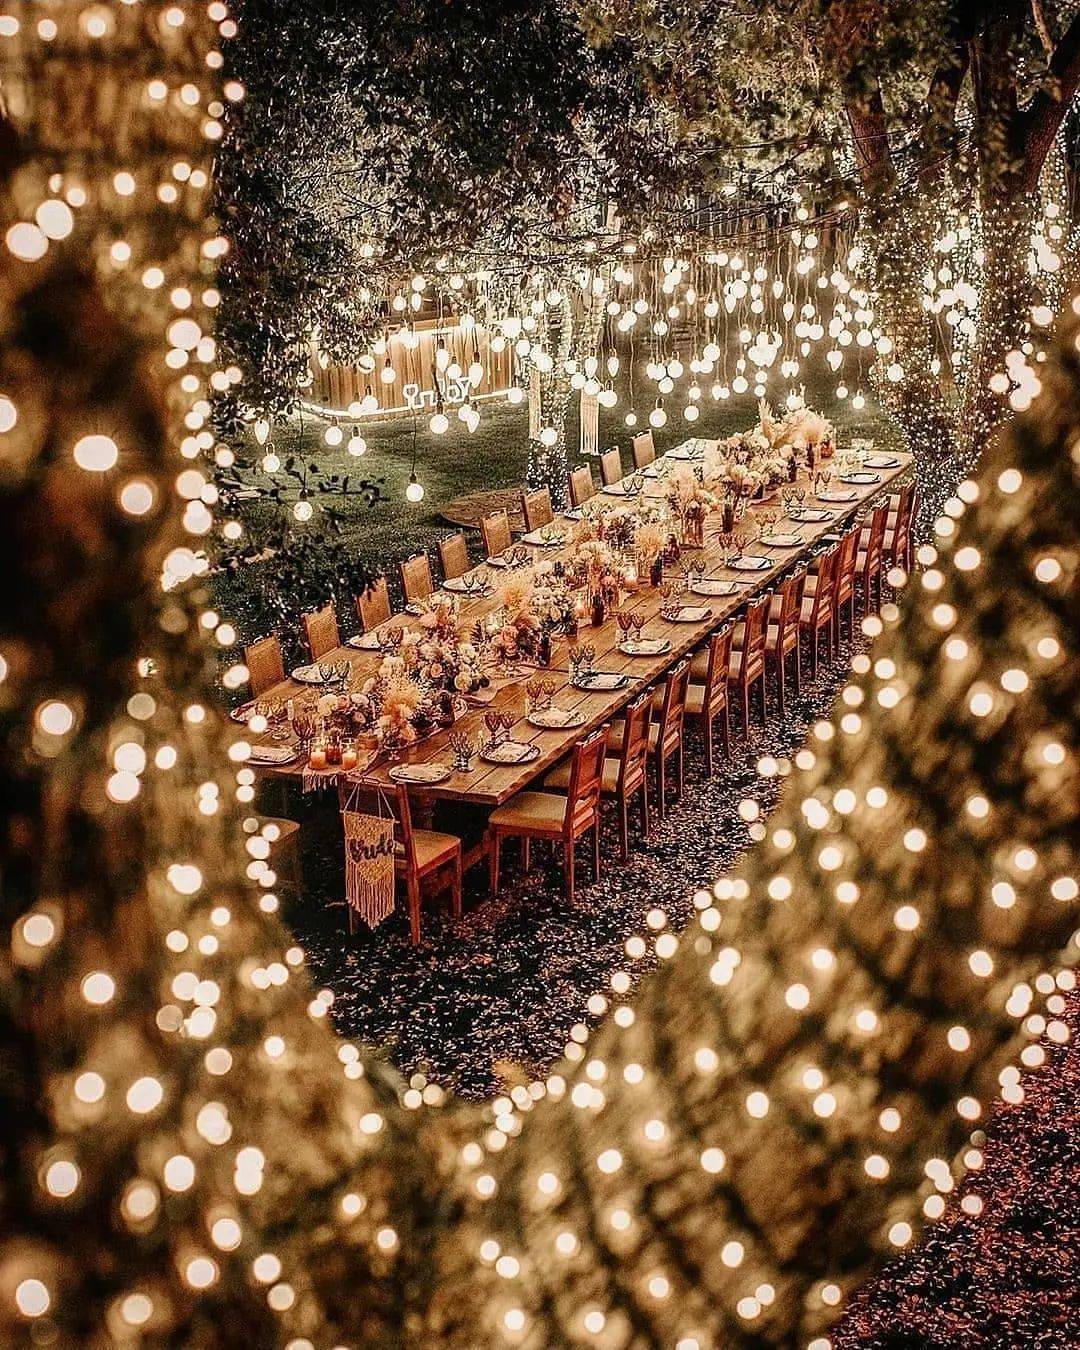 backyard small wedding table setting with light